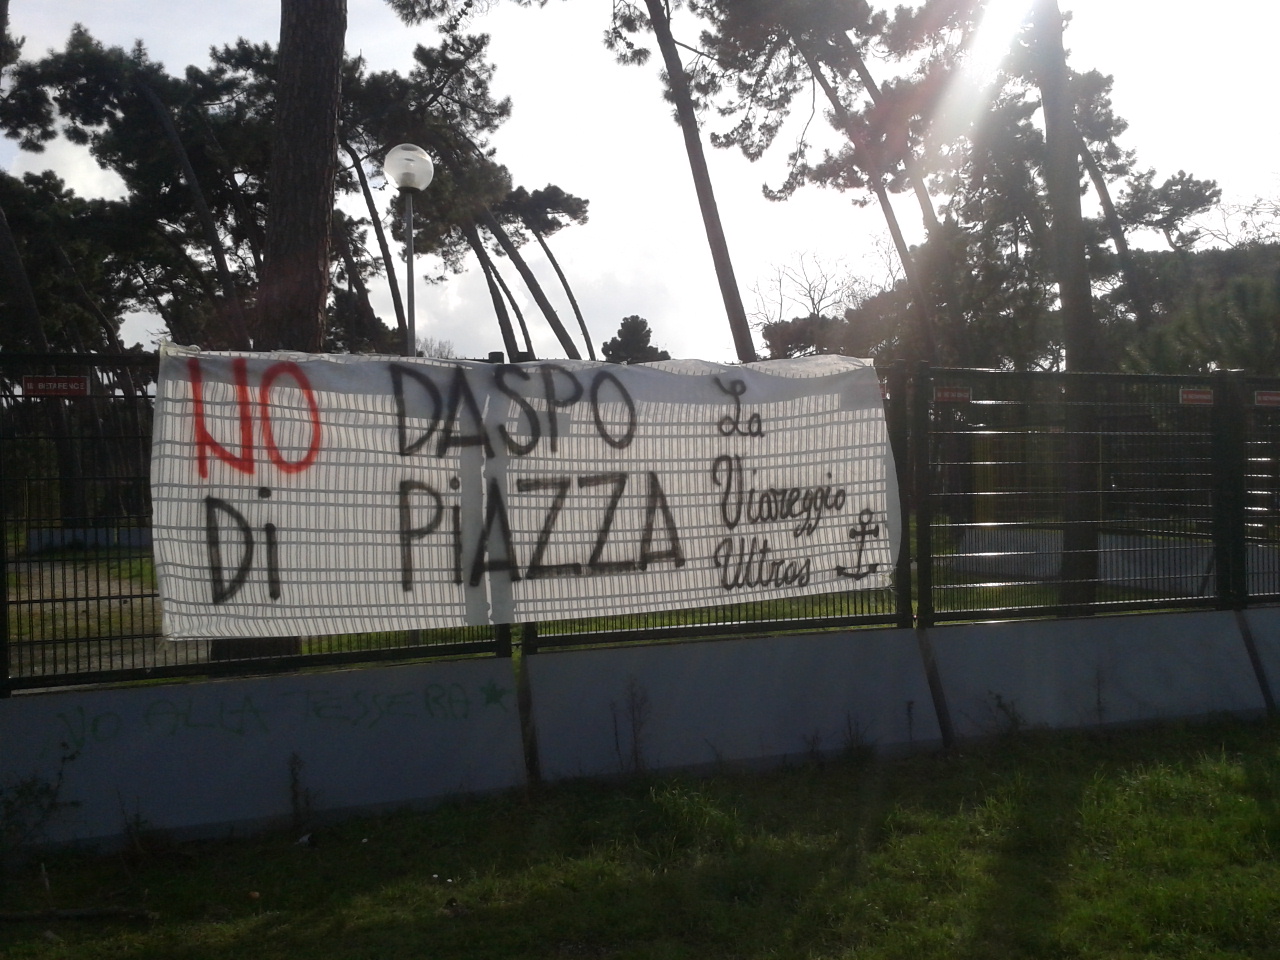 Gli ultras del Viareggio: “No al Daspo di piazza”